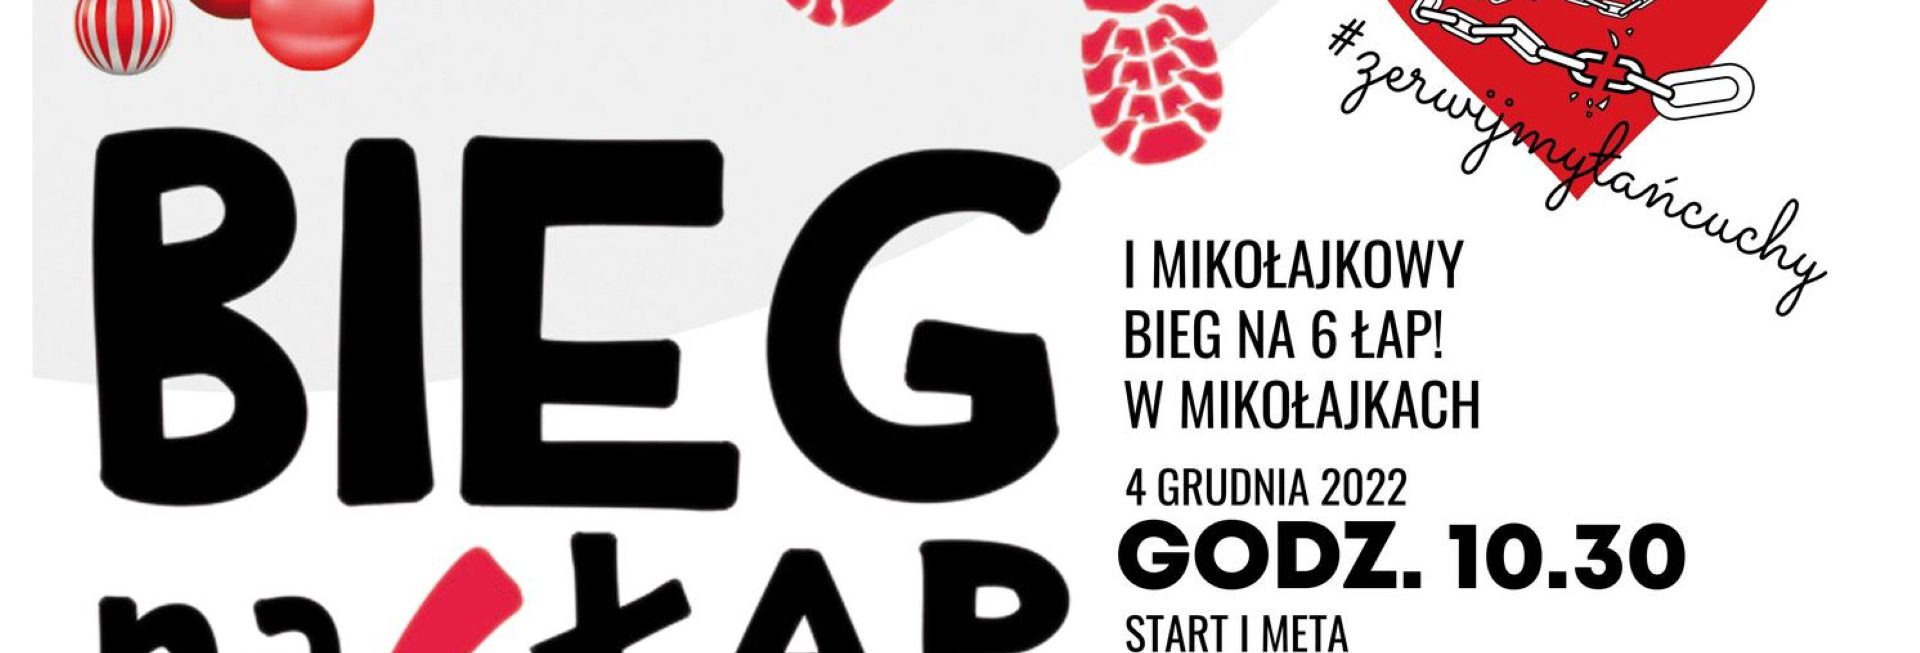 Plakat zapraszający do Mikołajek na 1. edycję Mikołajkowego Biegu Na 6 Łap! Mikołajki 2022.